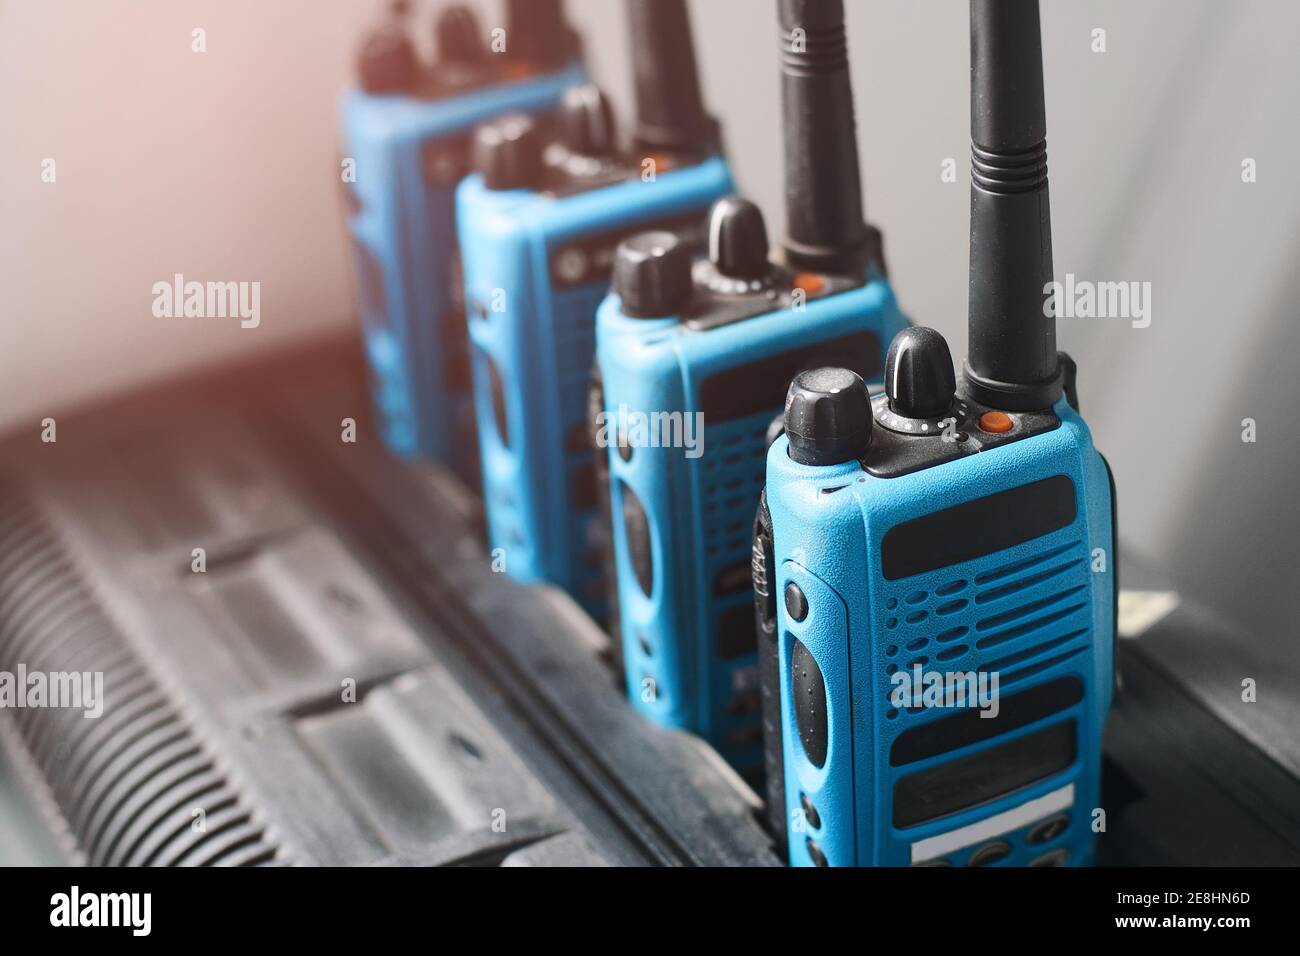 Un set di walkie-talkie blu si trova in una fila. Dispositivo per la trasmissione di comunicazioni radio stabili a distanza. Foto Stock